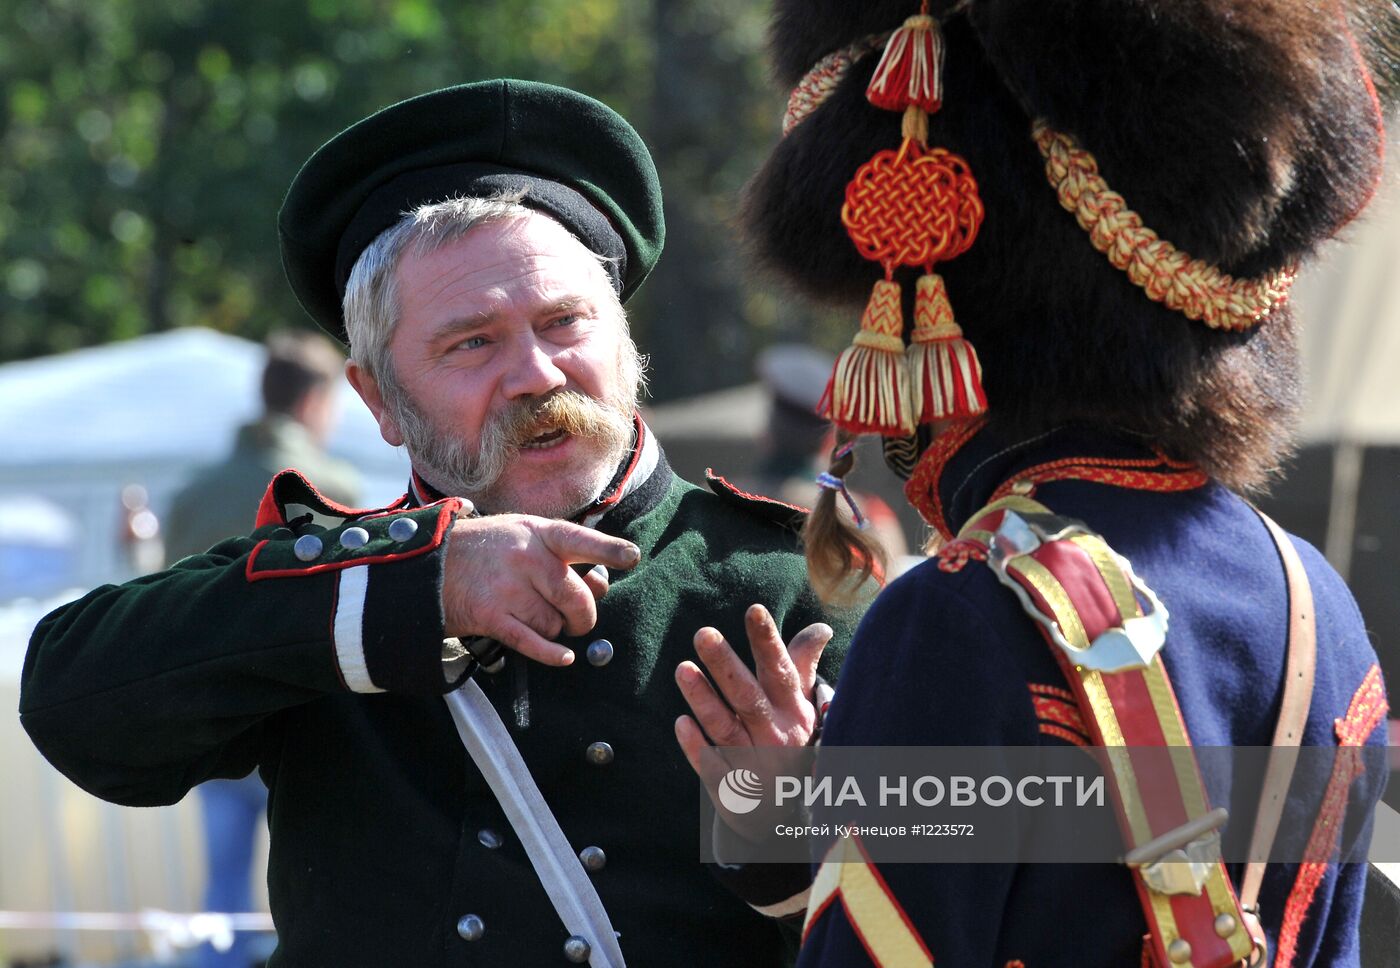 Подготовка к празднованию 200-летия Бородинской битвы